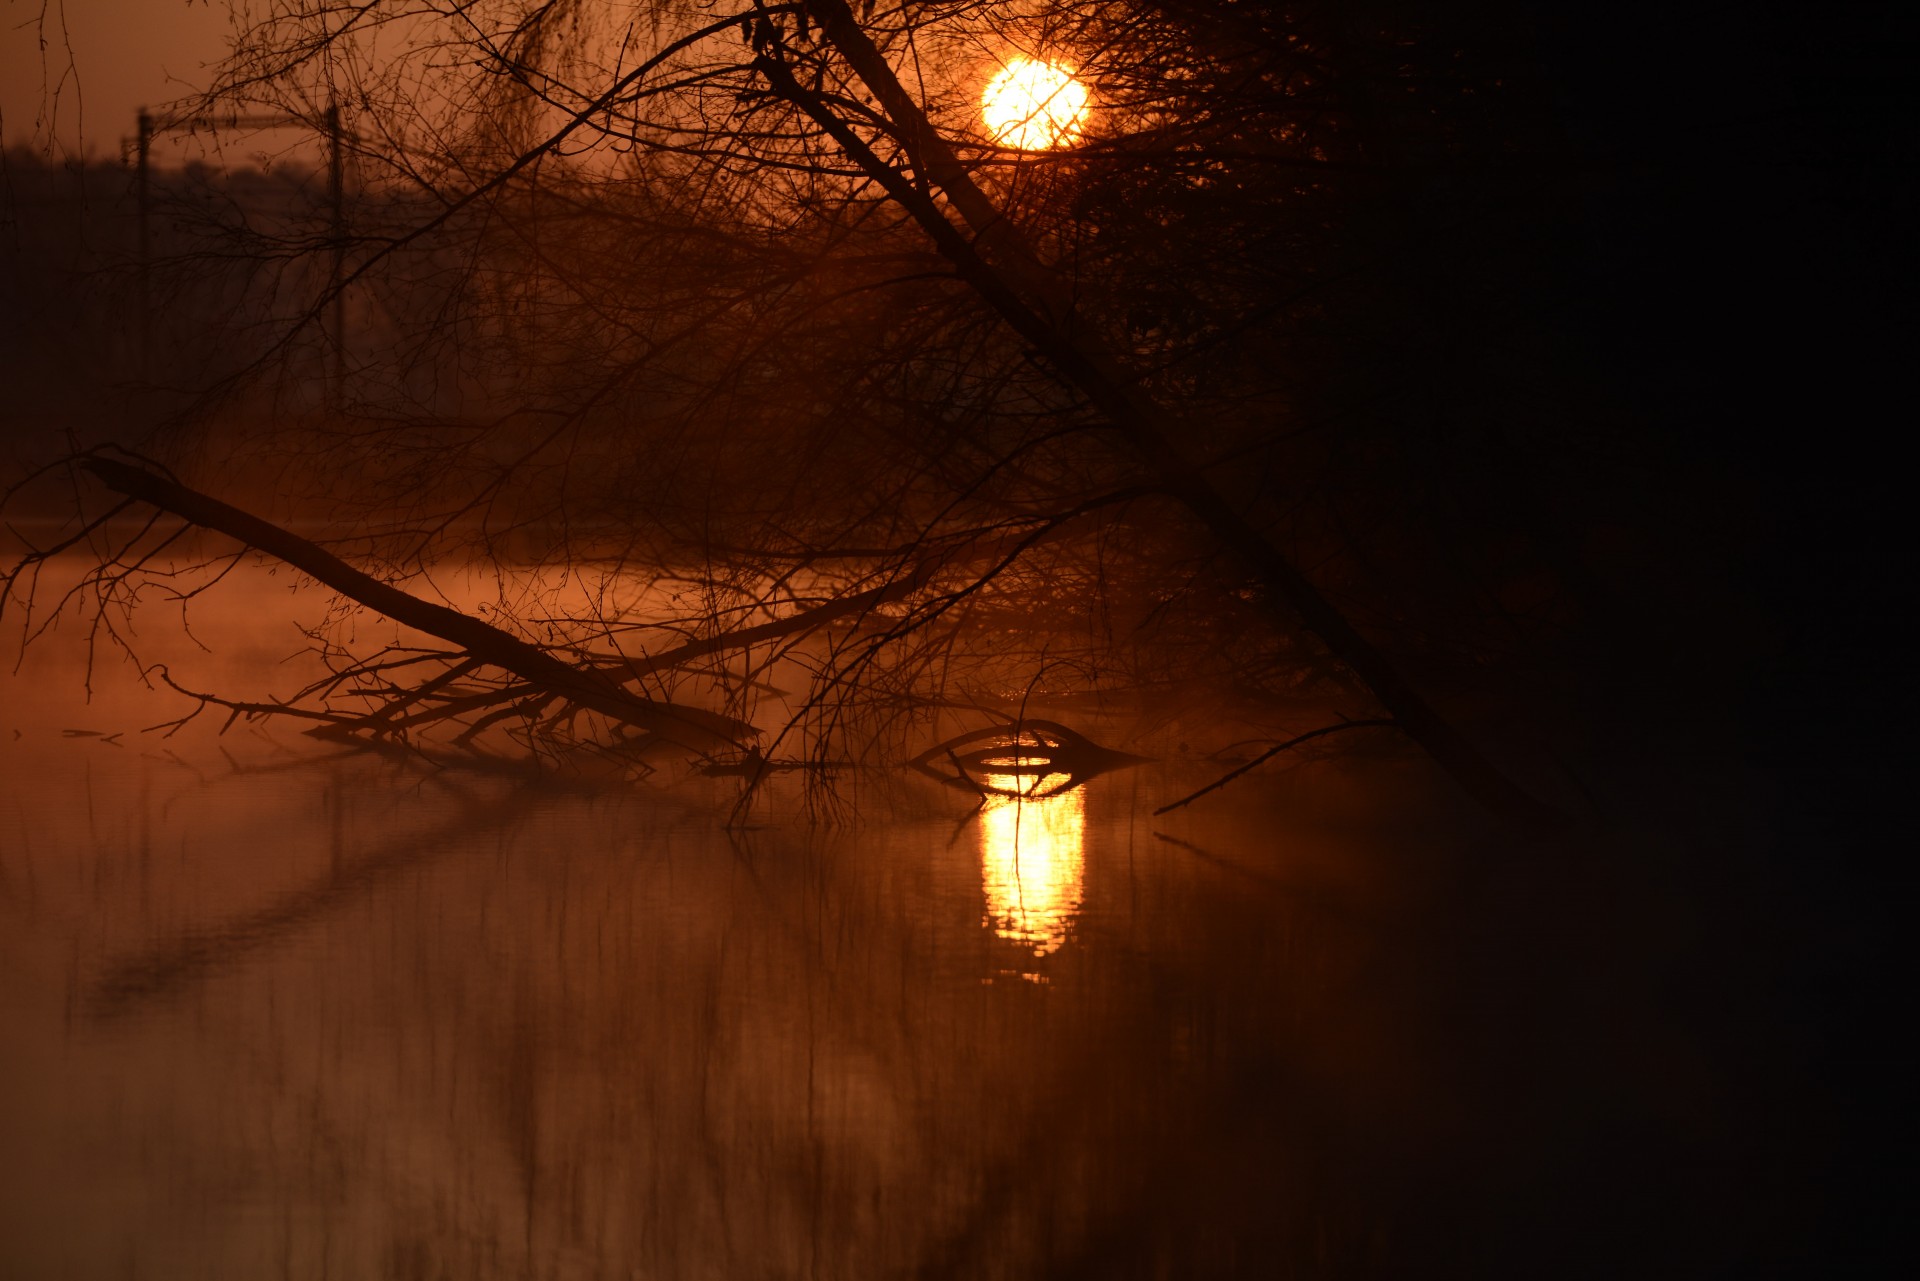 sunrise reflection pond free photo